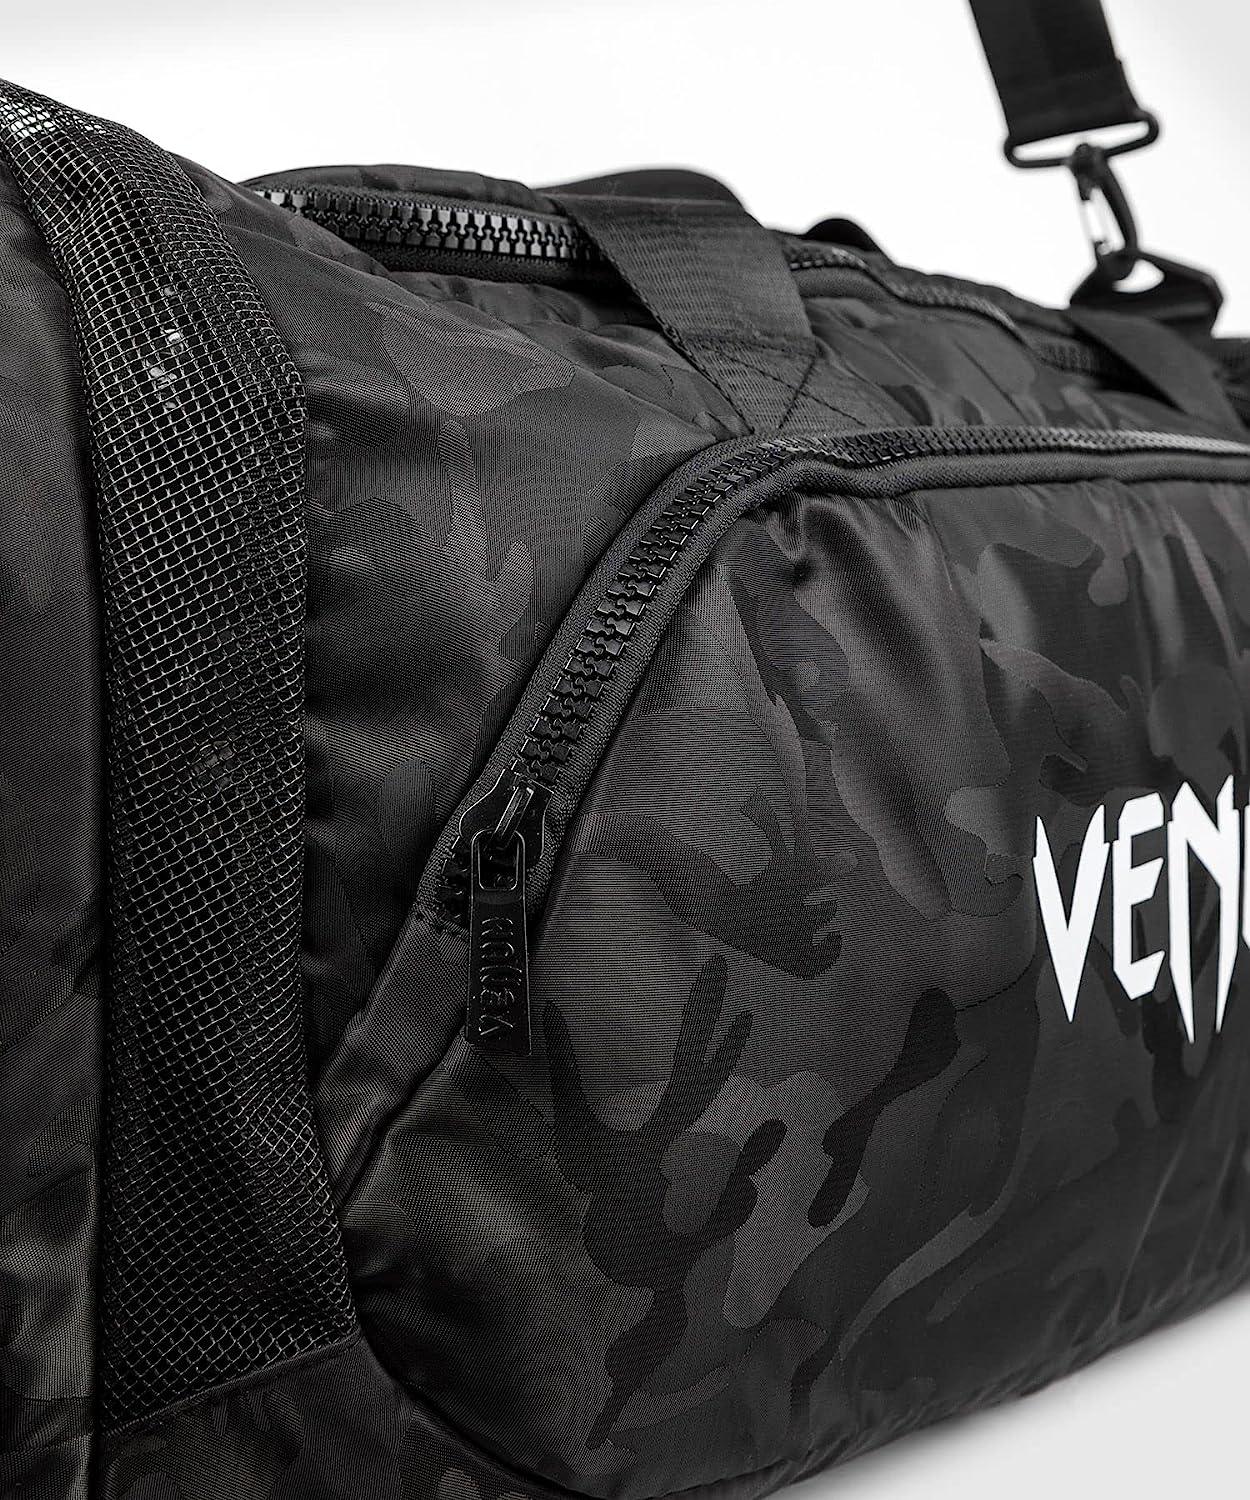 Sac de sport Venum Trainer Lite - Noir/Camouflage - Boutique des Arts Martiaux et Sports de Combat